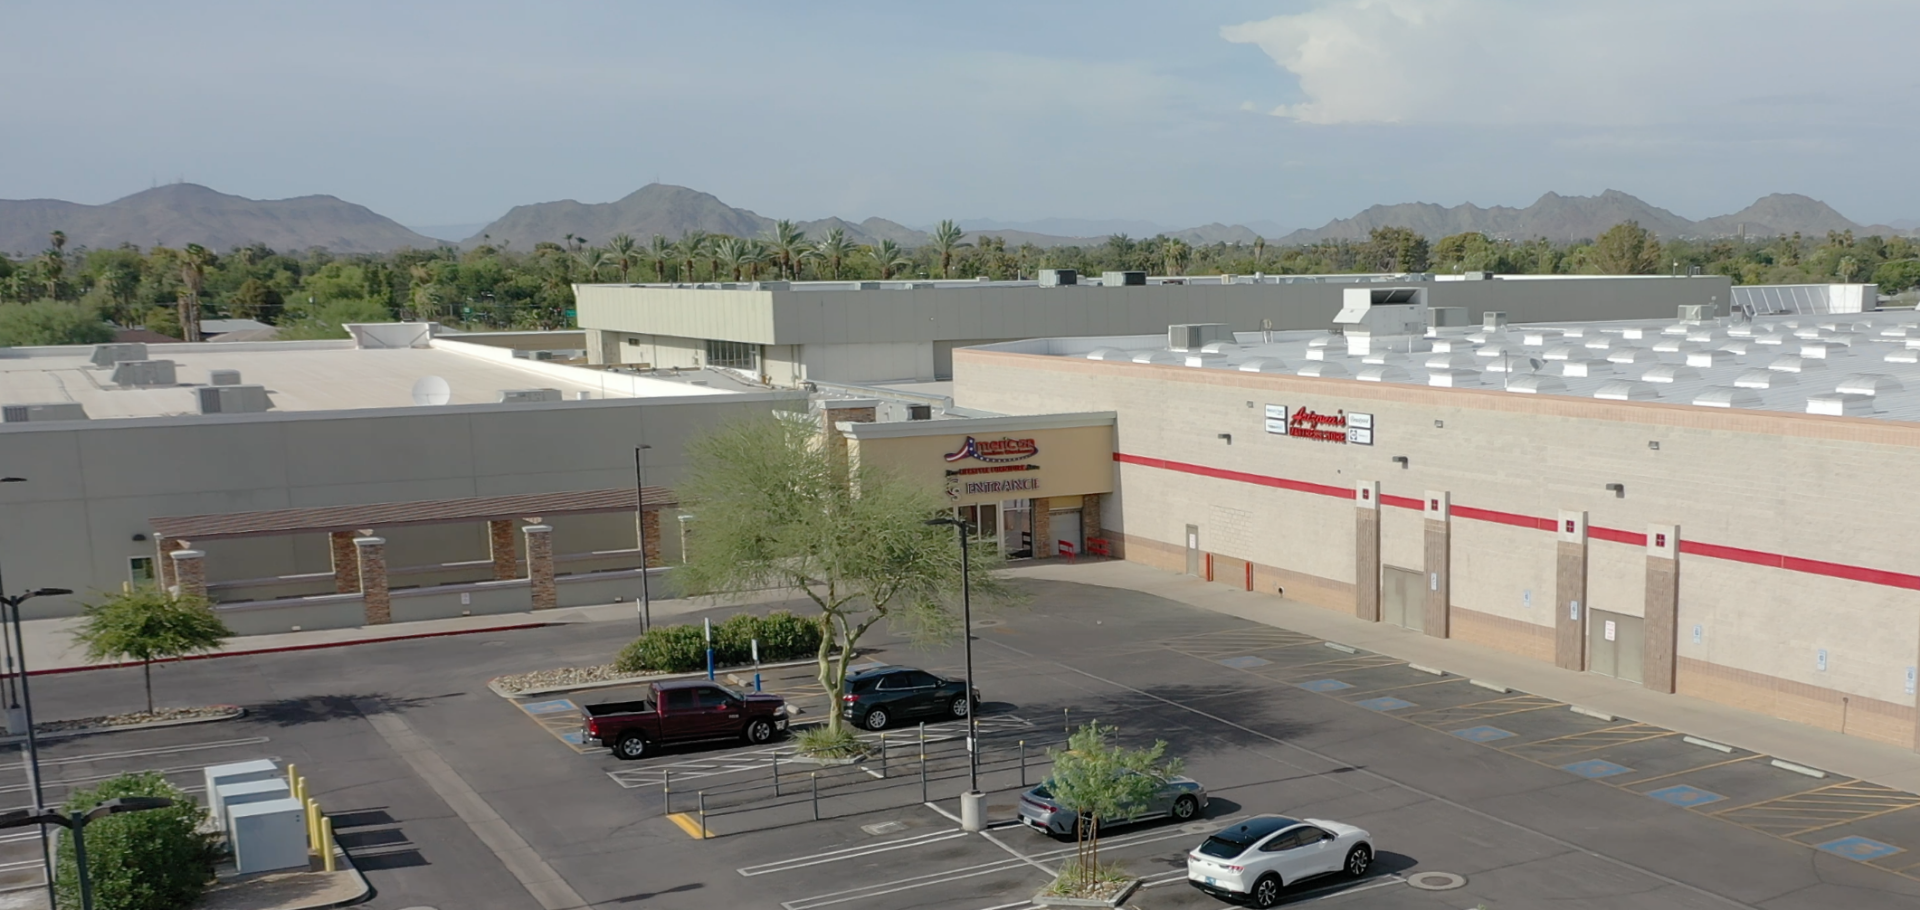 AFW's Newest Location is a Big Part of Phoenix's Retail Renaissance